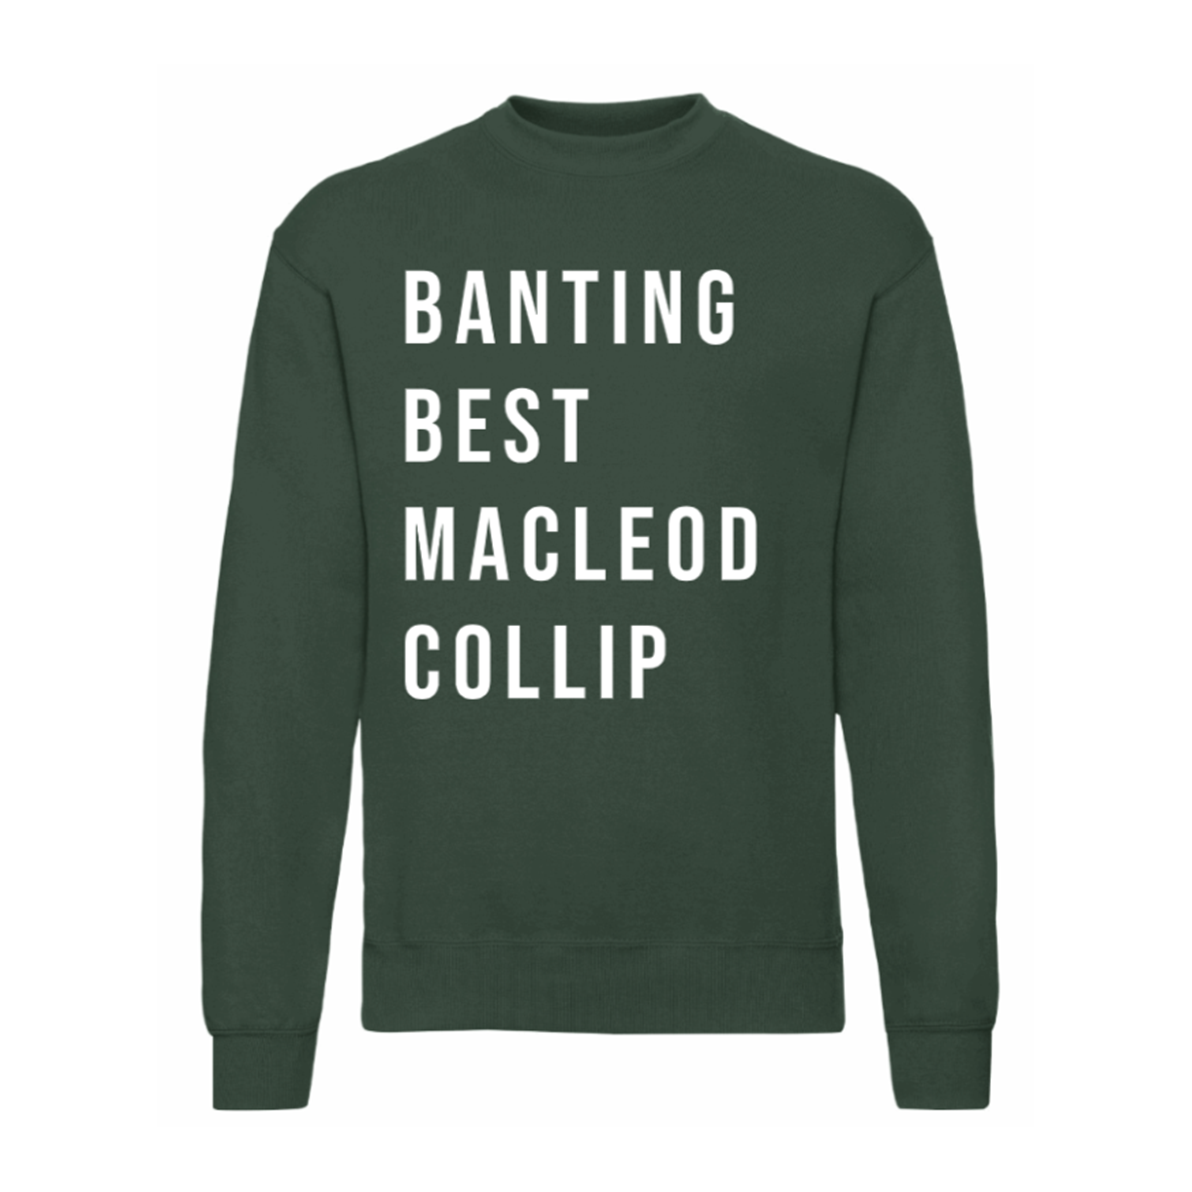 Banting, Best, Macleod & Collip Sweatshirt